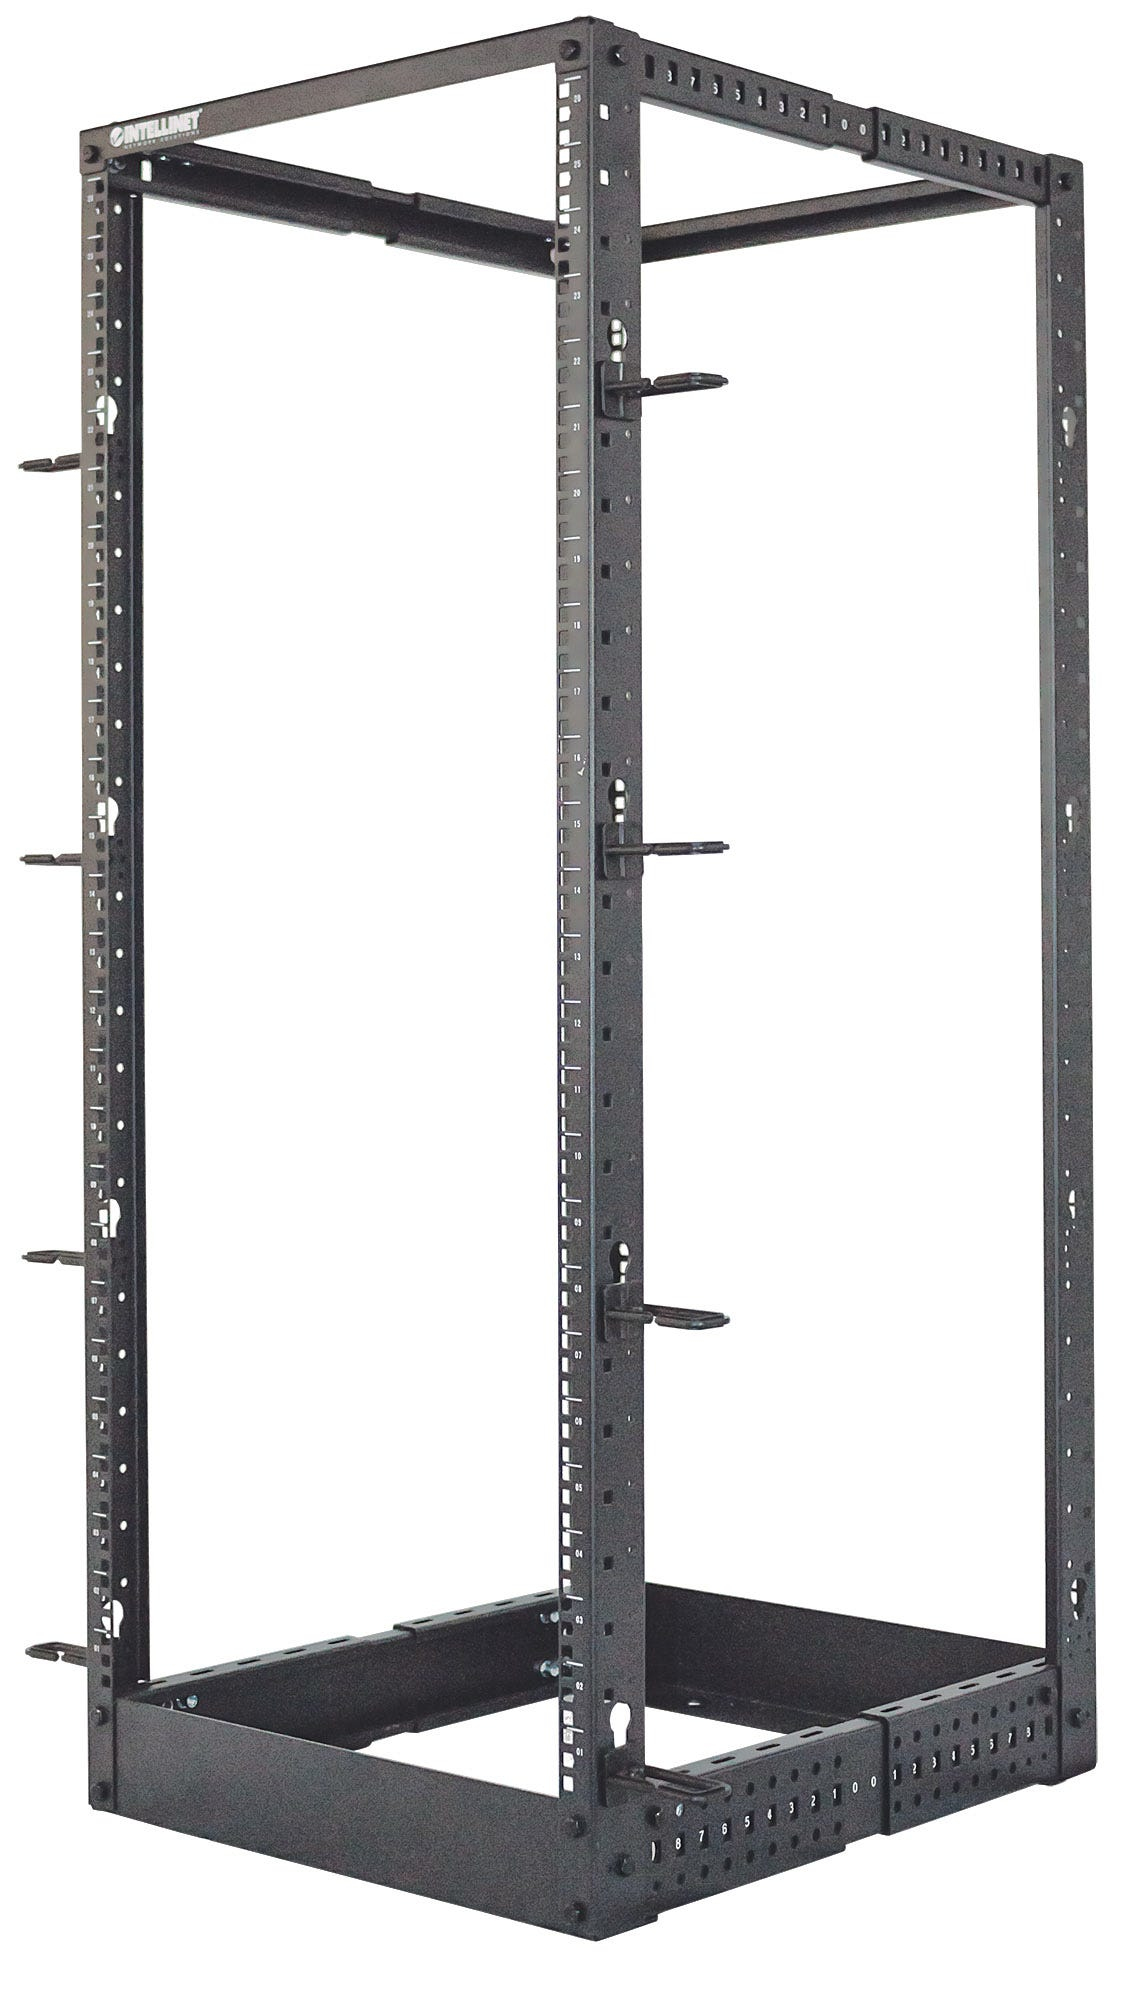 Intellinet 19" 4-Pfosten Laborgestell, 48 HE, Flatpack, schwarz - Schrank - offener Rahmen - 4 Pfosten - Schwarz, RAL 9005 - 48U - 48.3 cm (19")